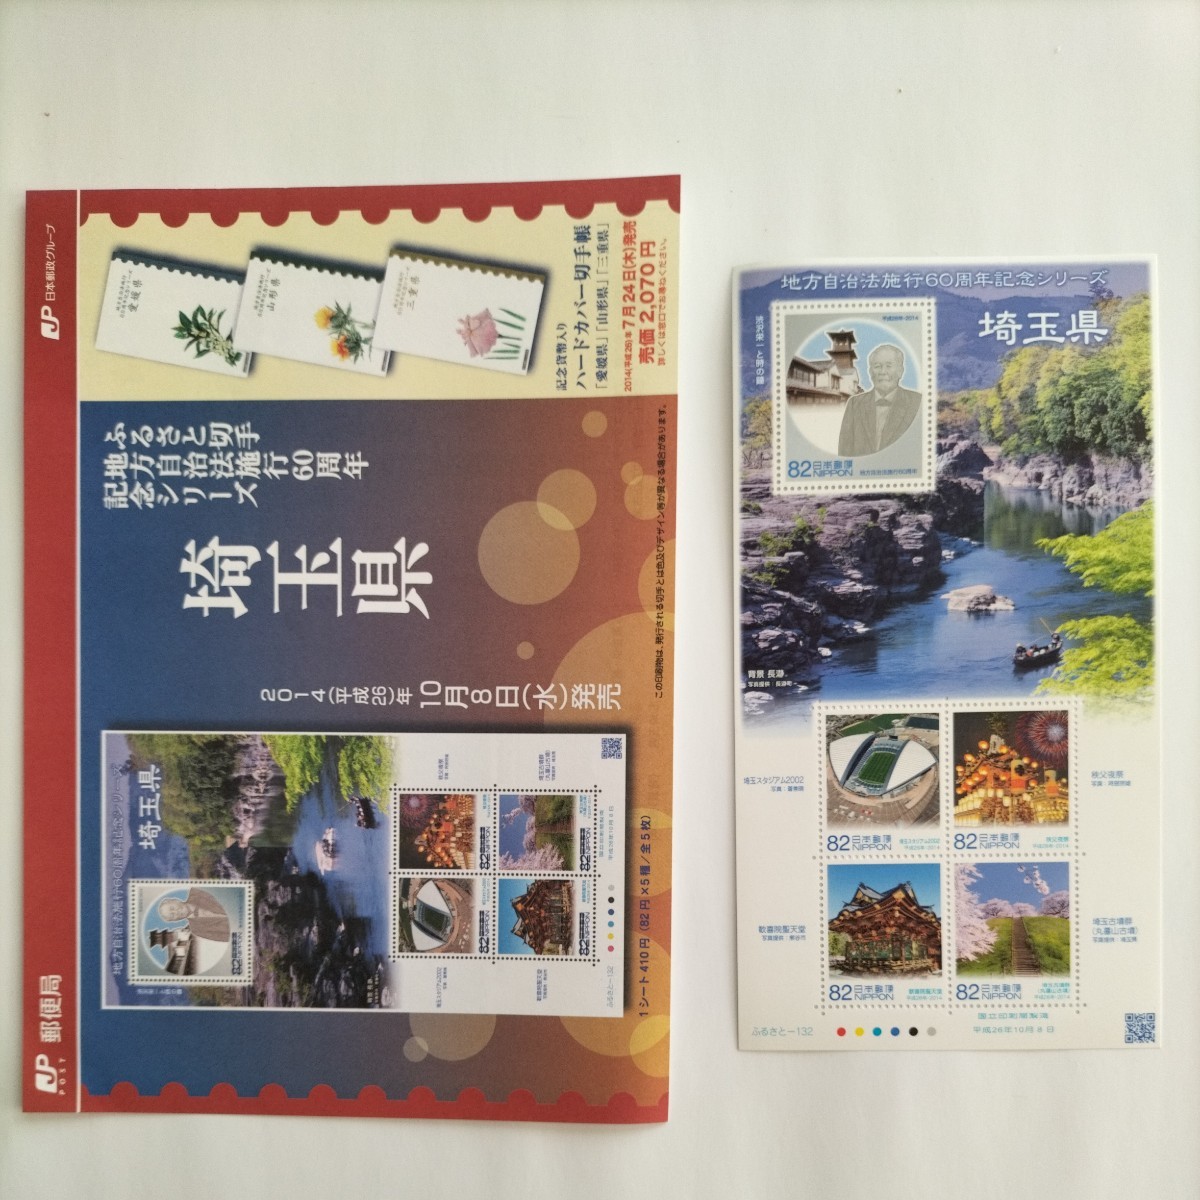 【記念切手】地方自治法施行60周年記念 埼玉県、82円切手×5枚×1シートです。 発売時のパンフレット付きです。の画像1